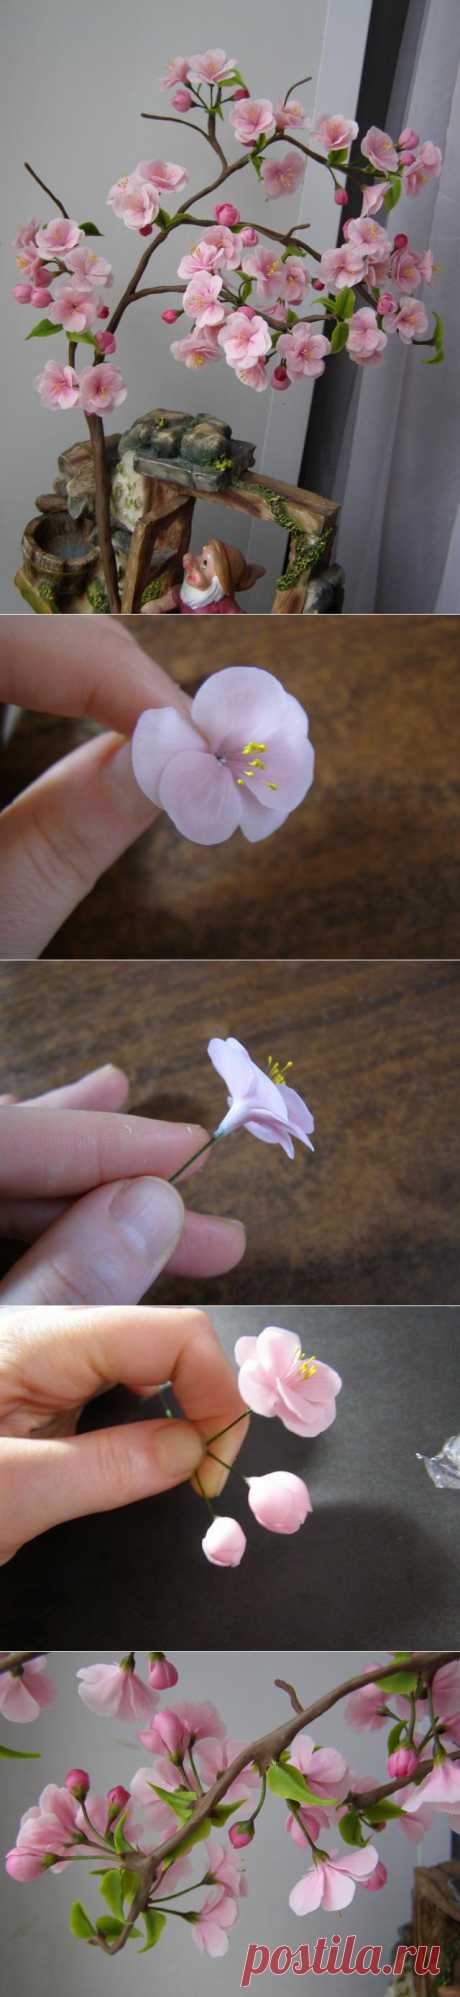 Цветы сакуры из полимерной глины (Очень красиво!)